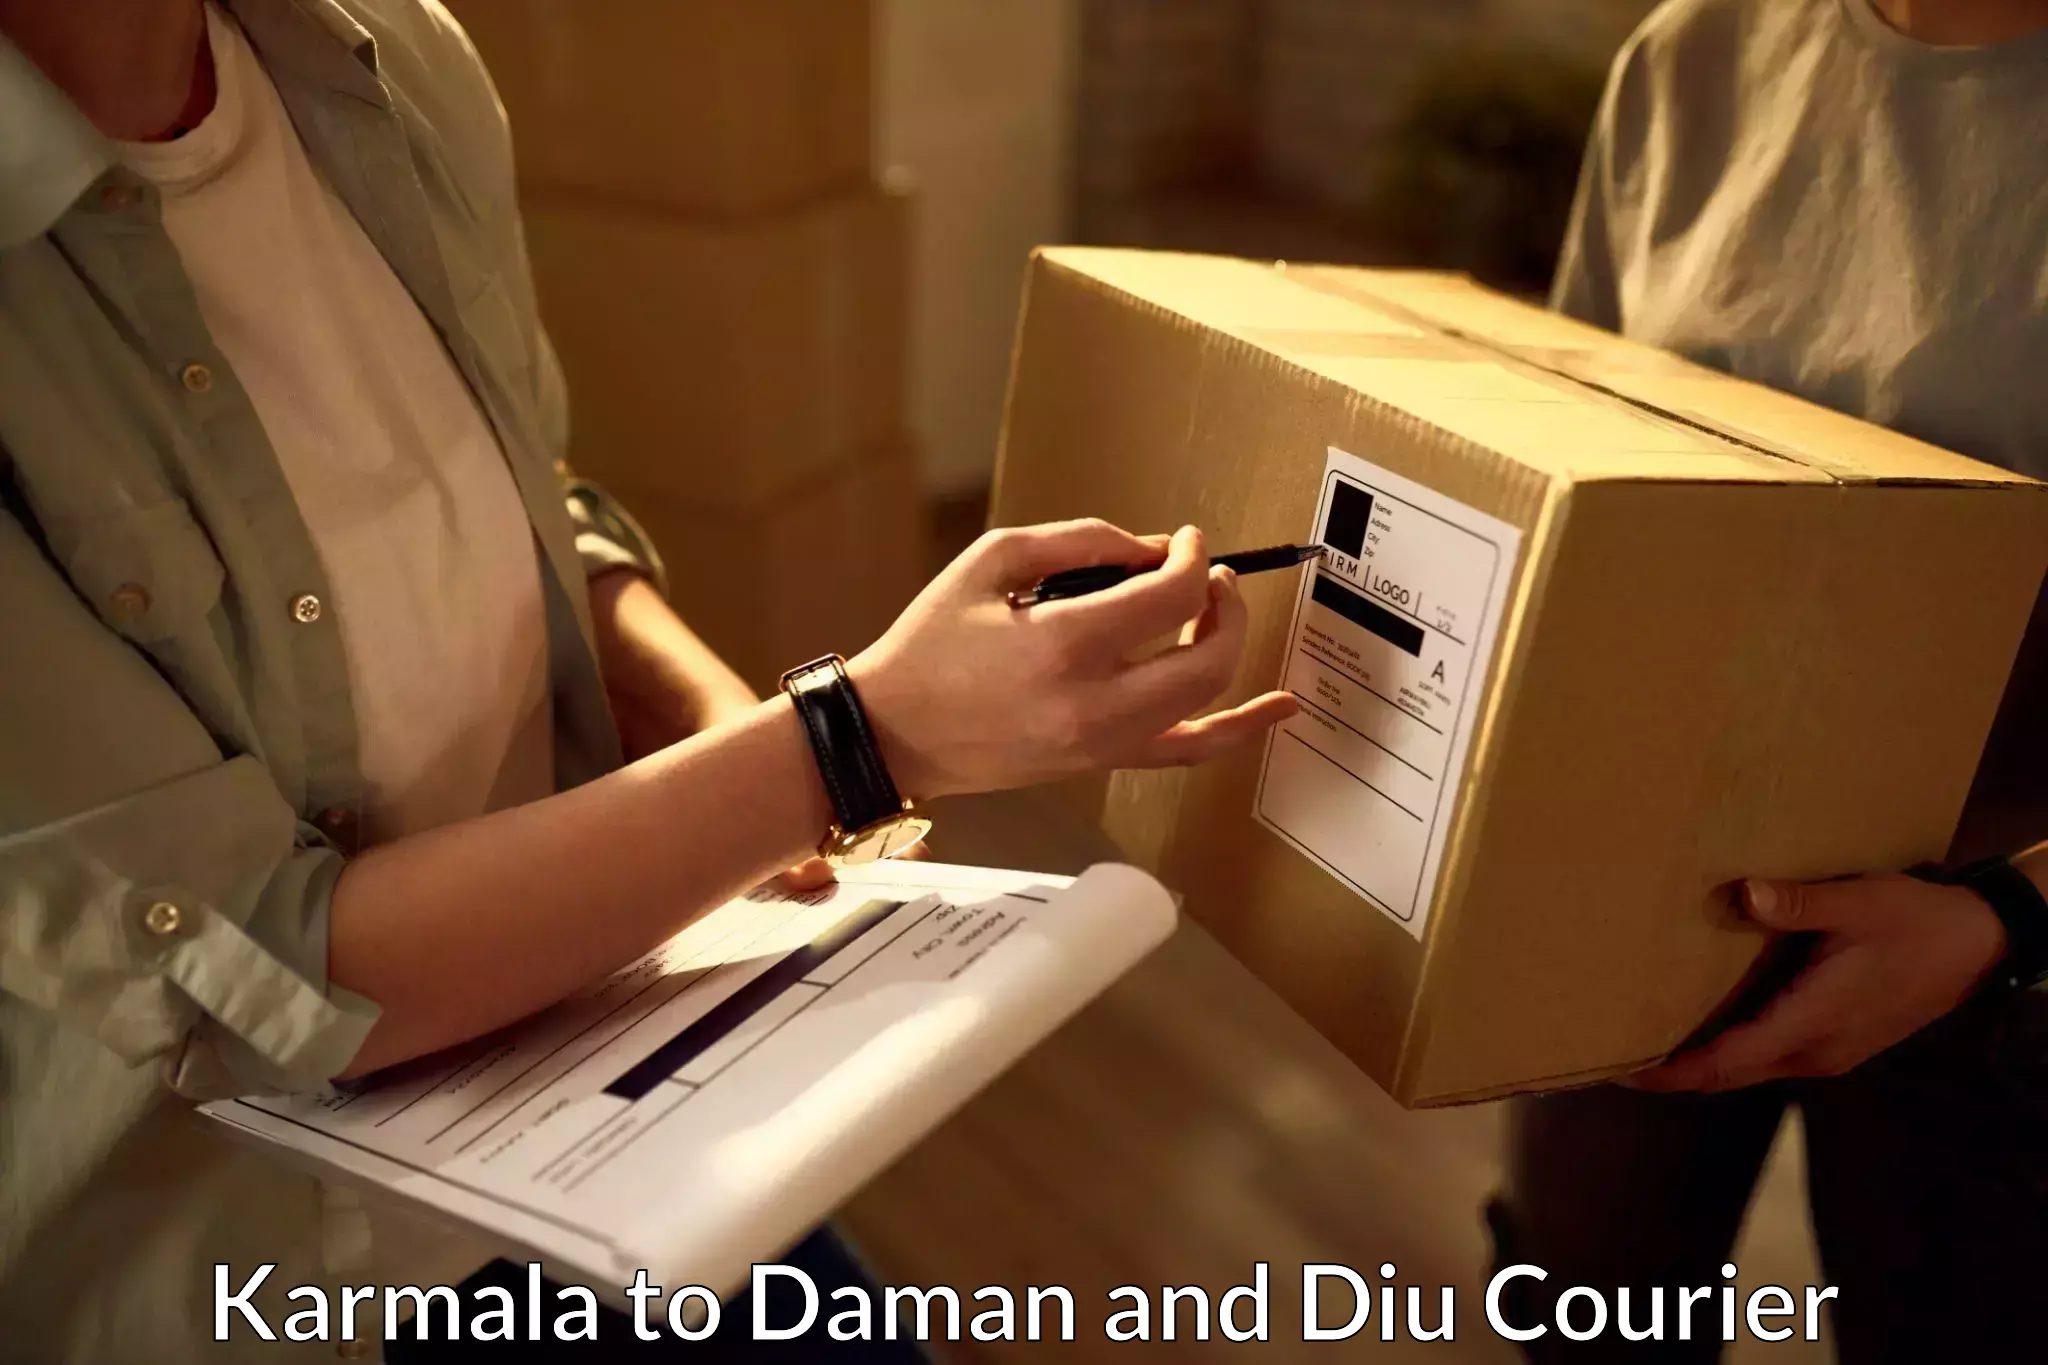 Express package handling Karmala to Daman